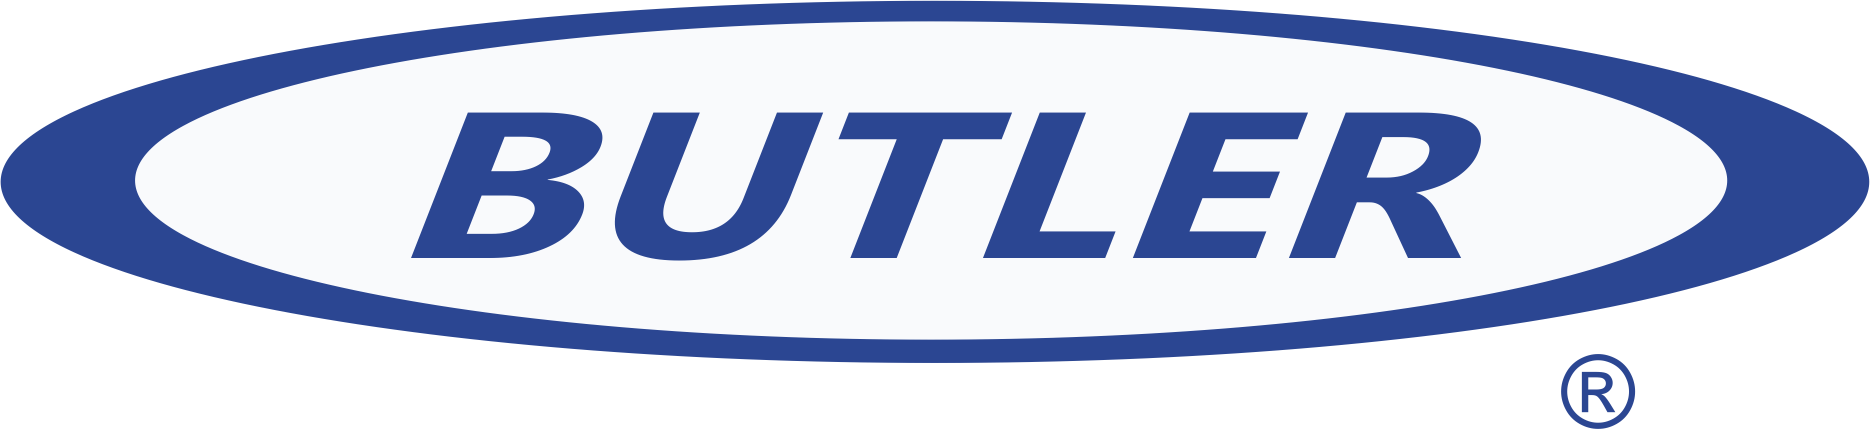 Butler Manufacturing logo.